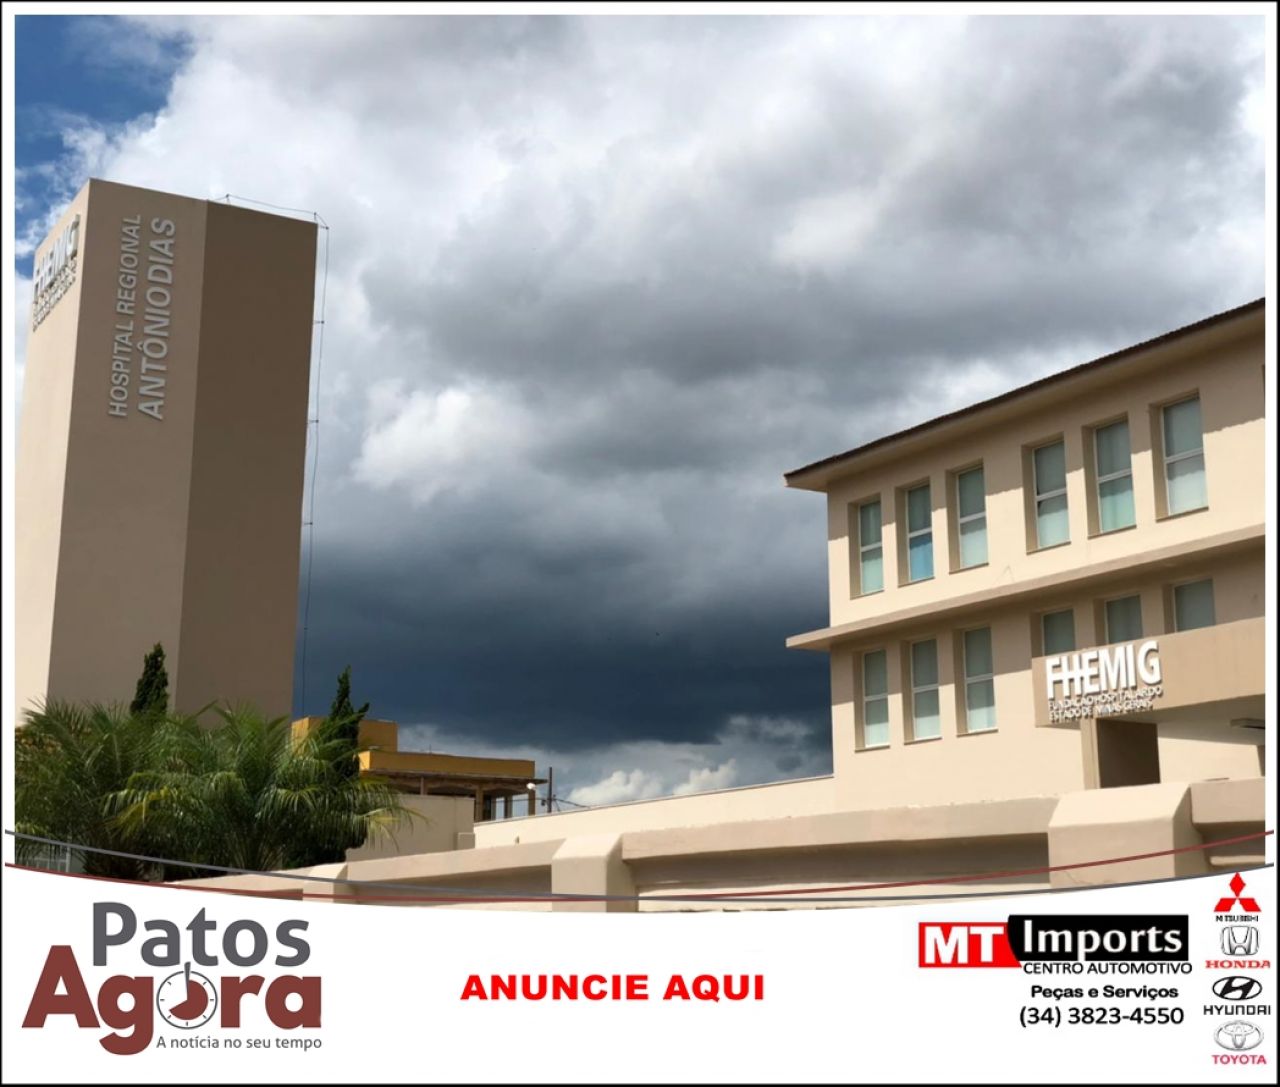 Governo de Minas publica edital para entregar gestão do Hospital Regional para Organização Social